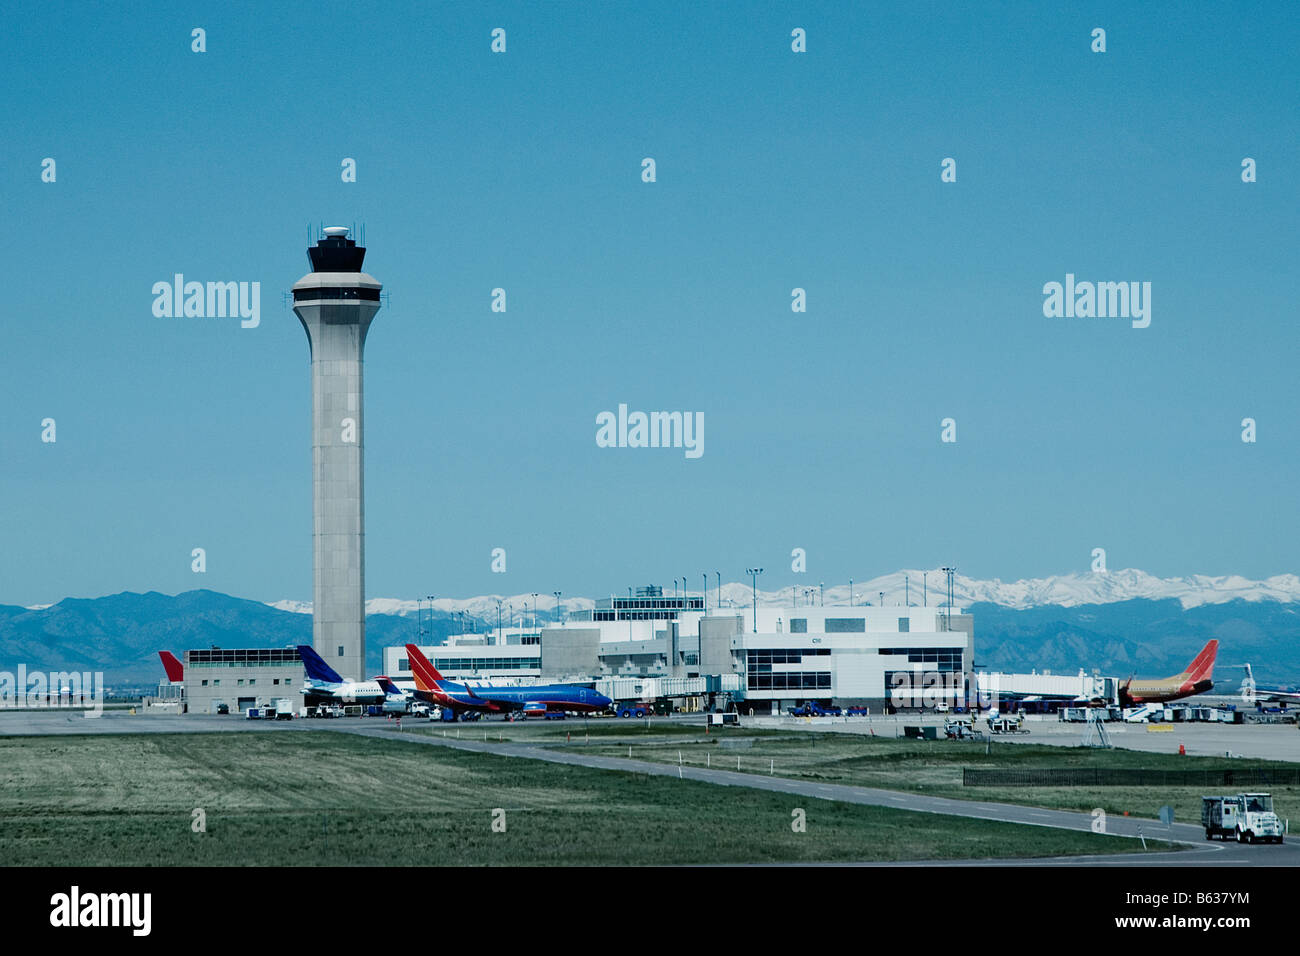 Airplanes at the airport, Denver International Airport, Denver, Colorado, USA Stock Photo